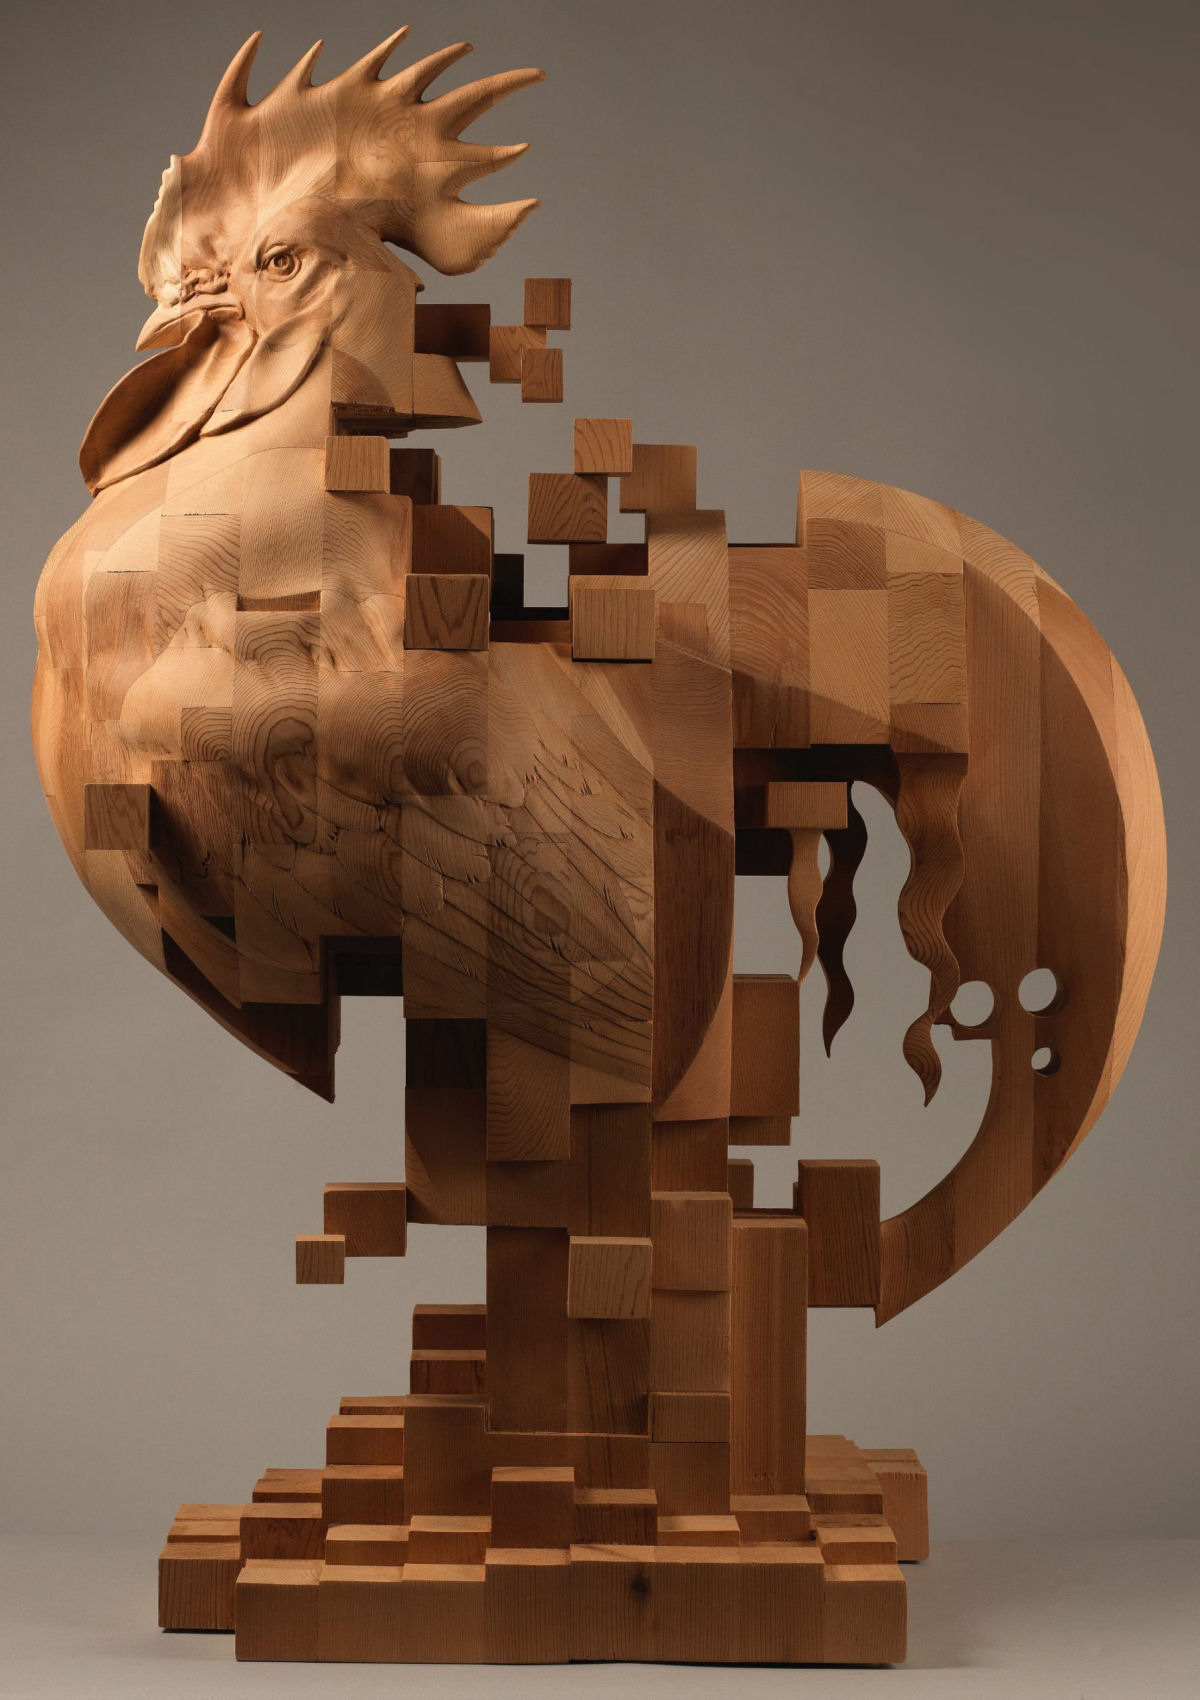 Esculturas figurativas parecem se fragmentar com pixels de madeira 05